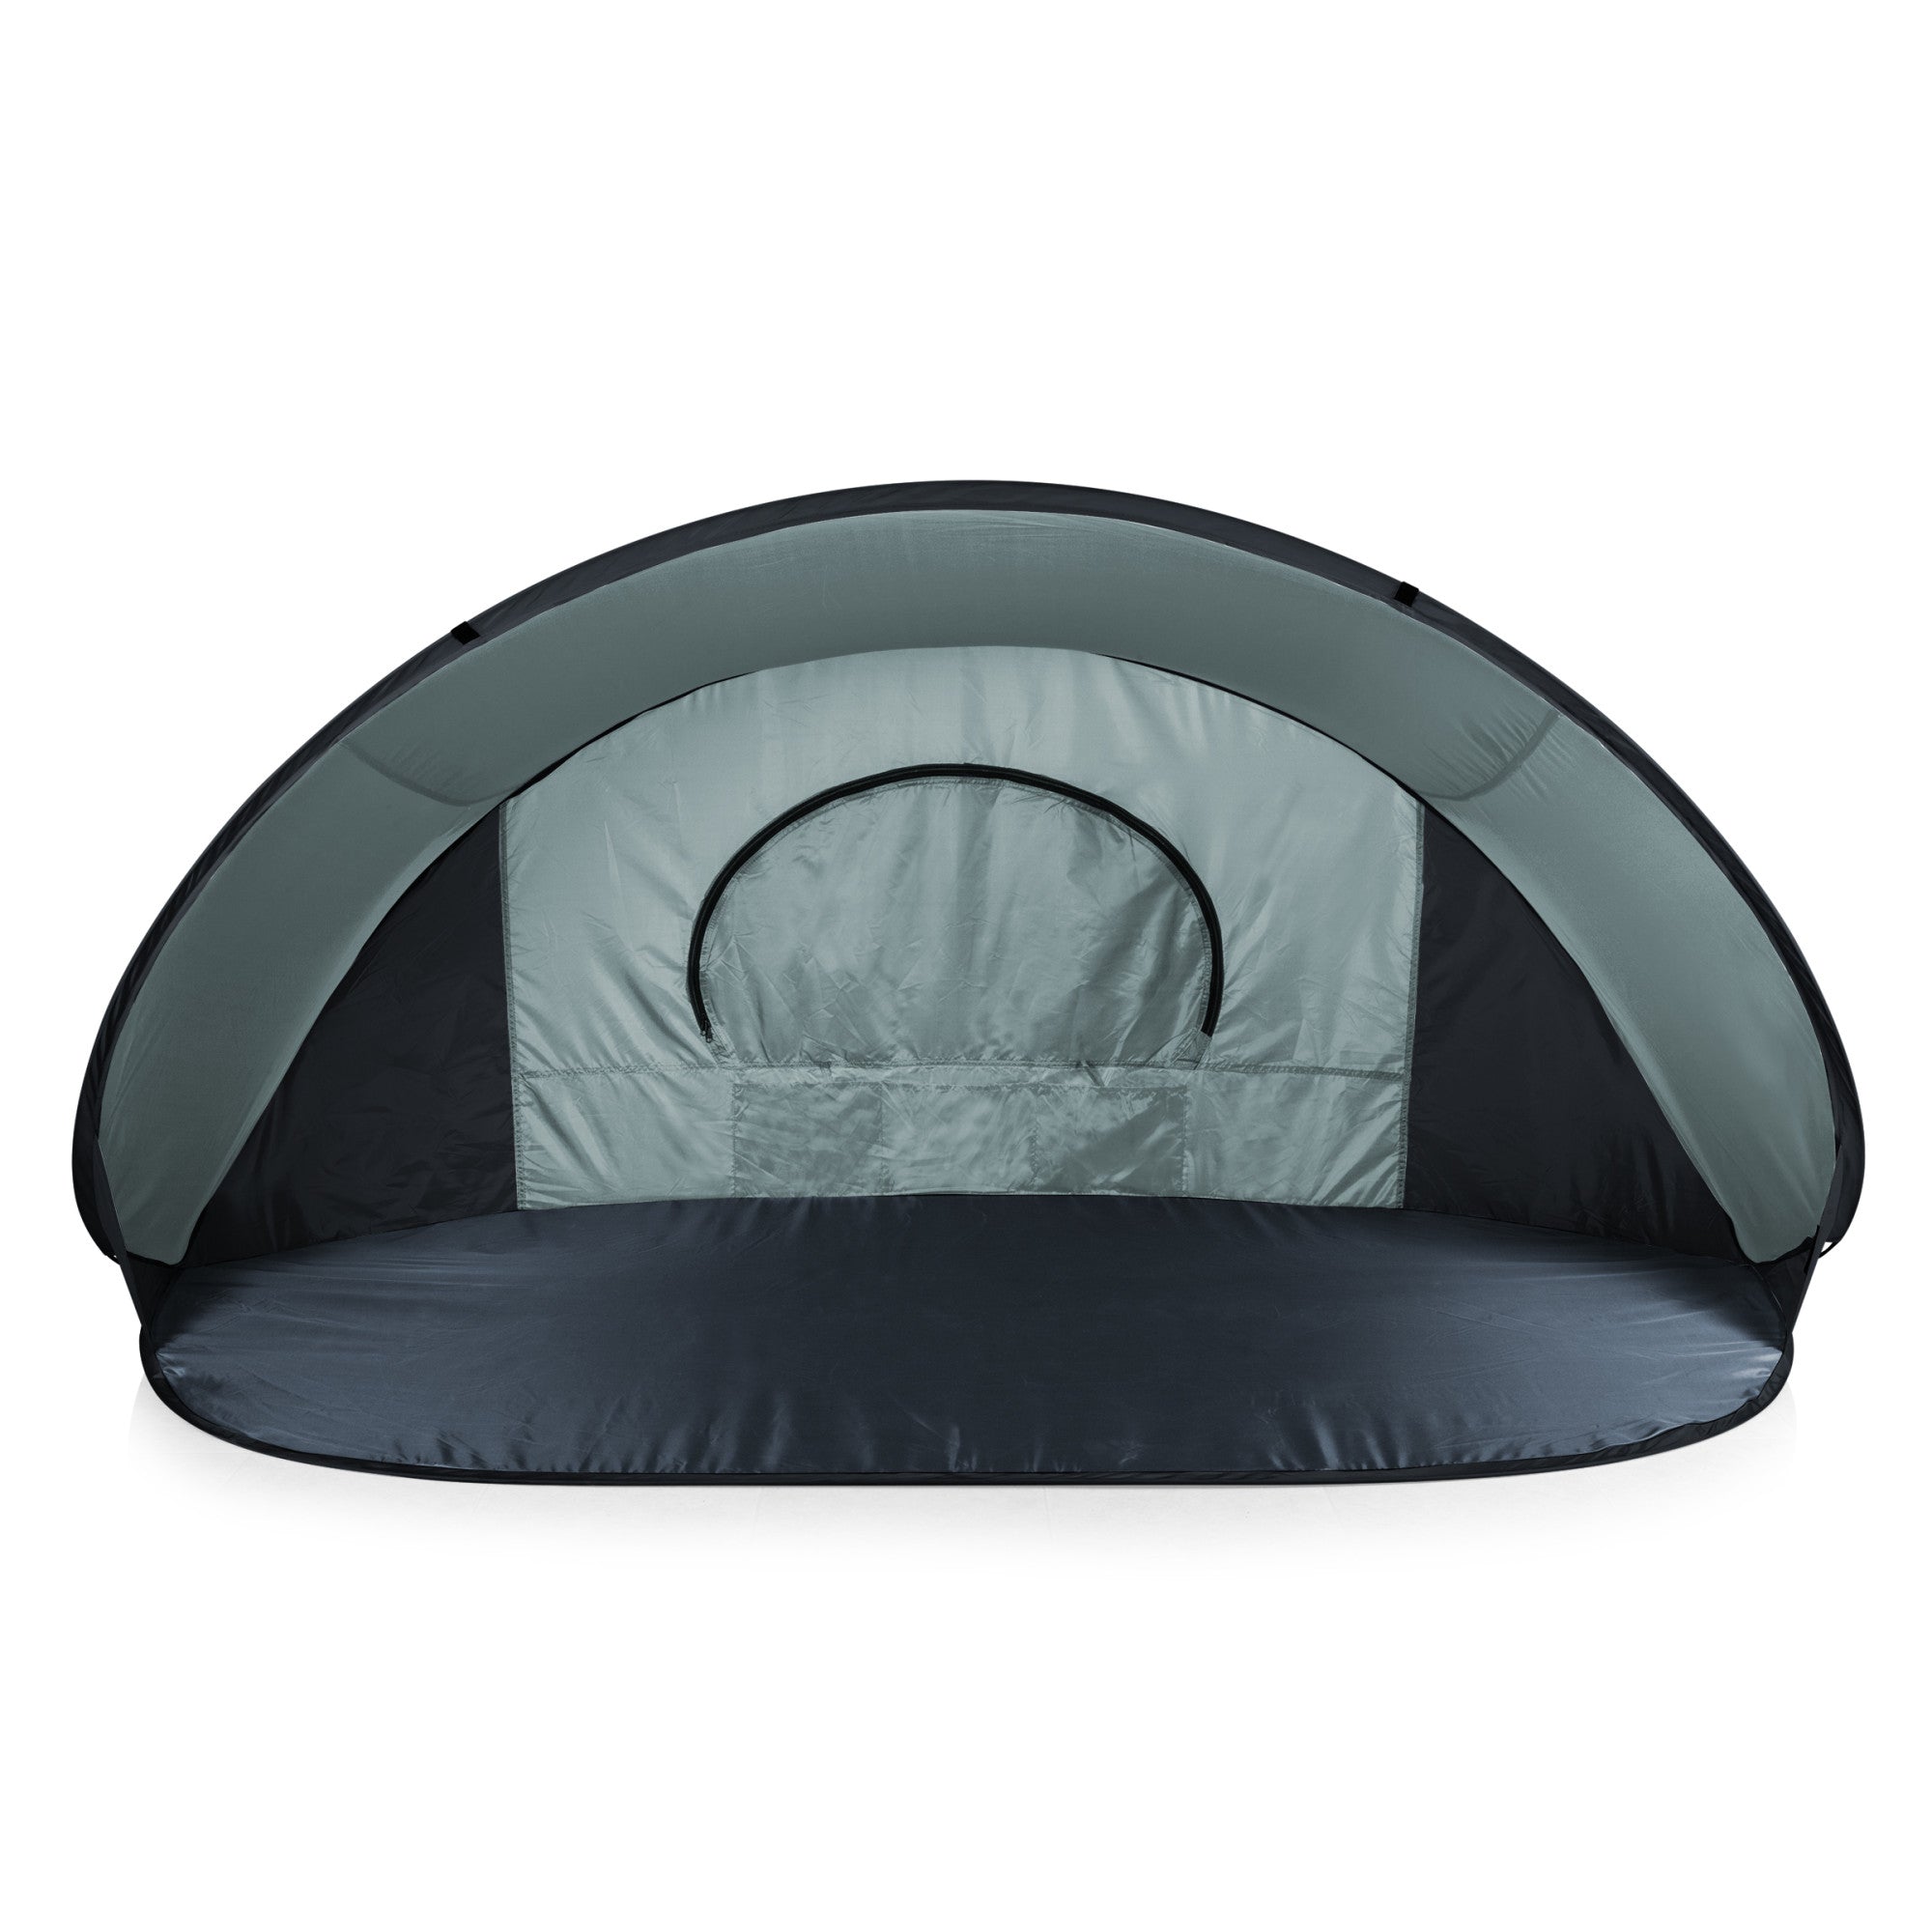 Detroit Lions - Manta Portable Beach Tent